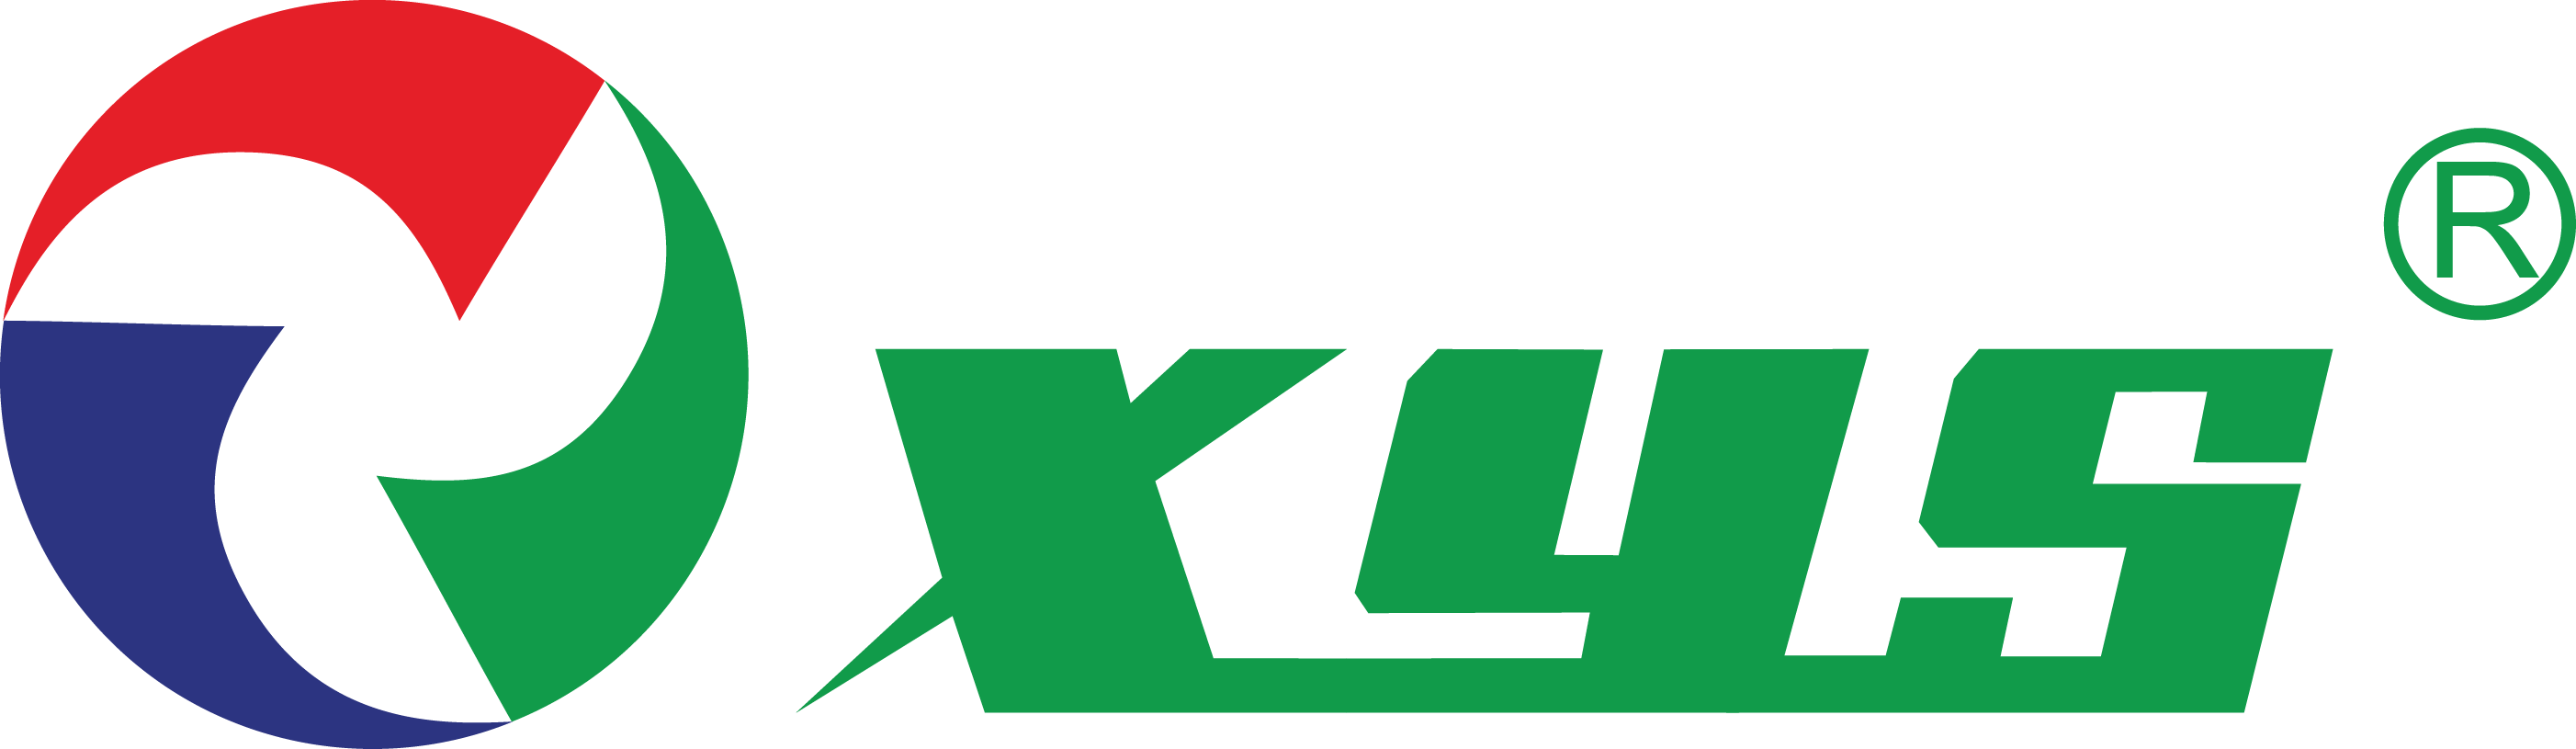 Xinyi logo